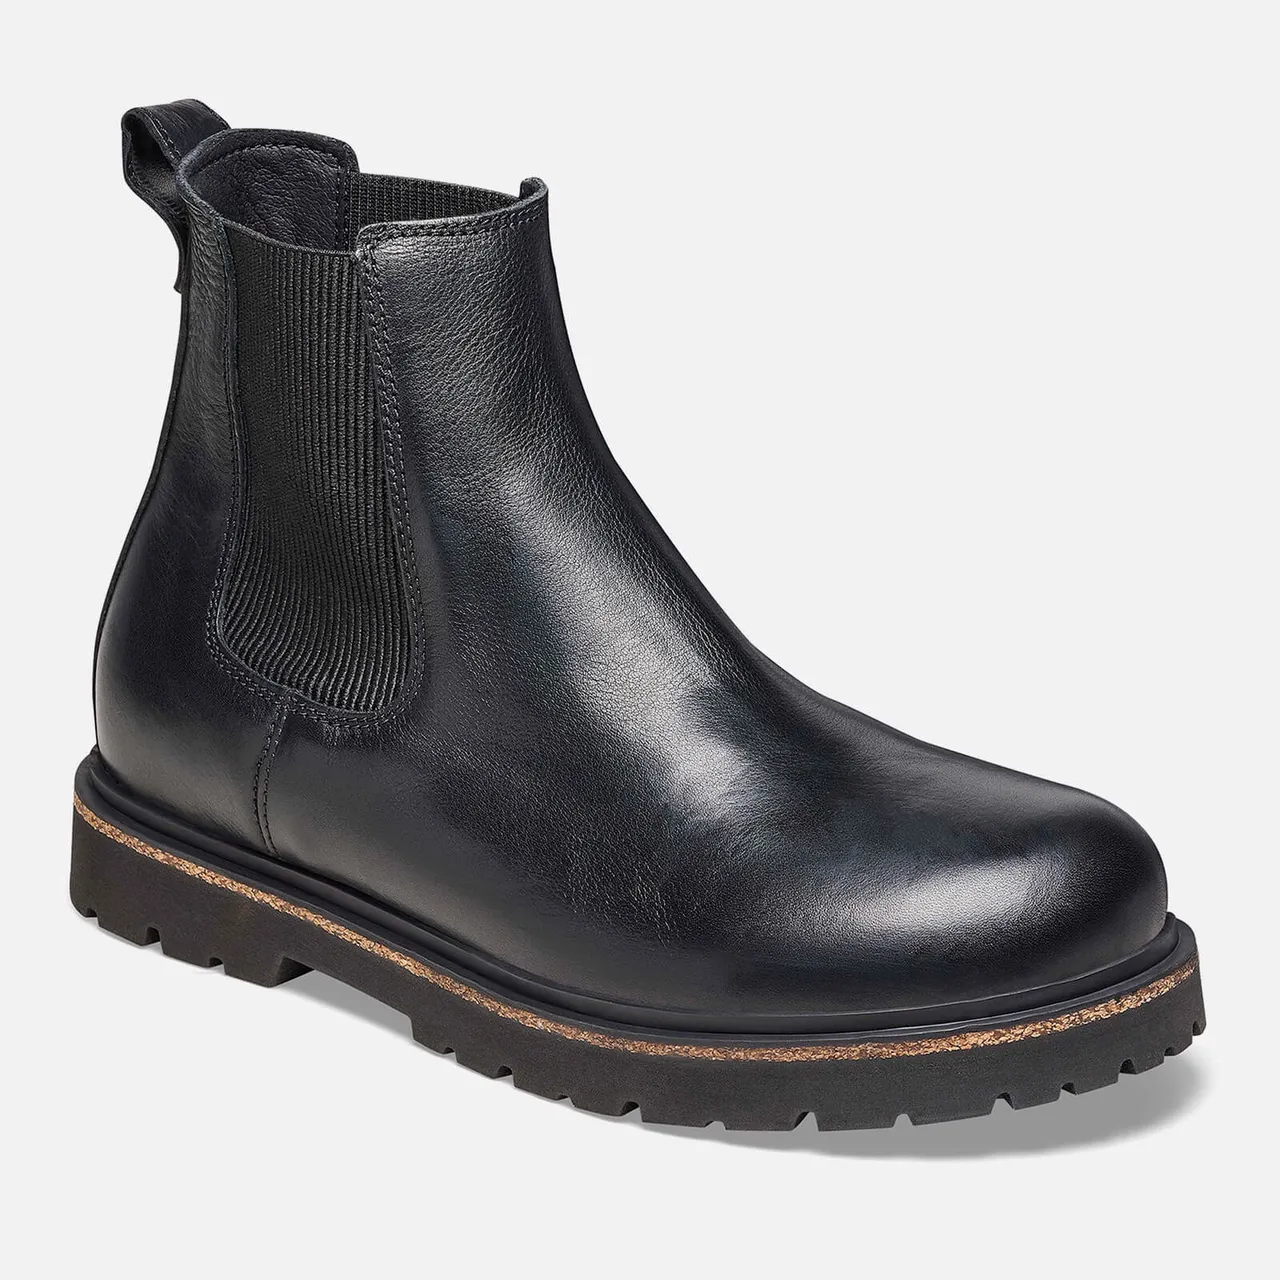 Birkenstock Men's Gripwalk Leather Chelsea Boots - UK